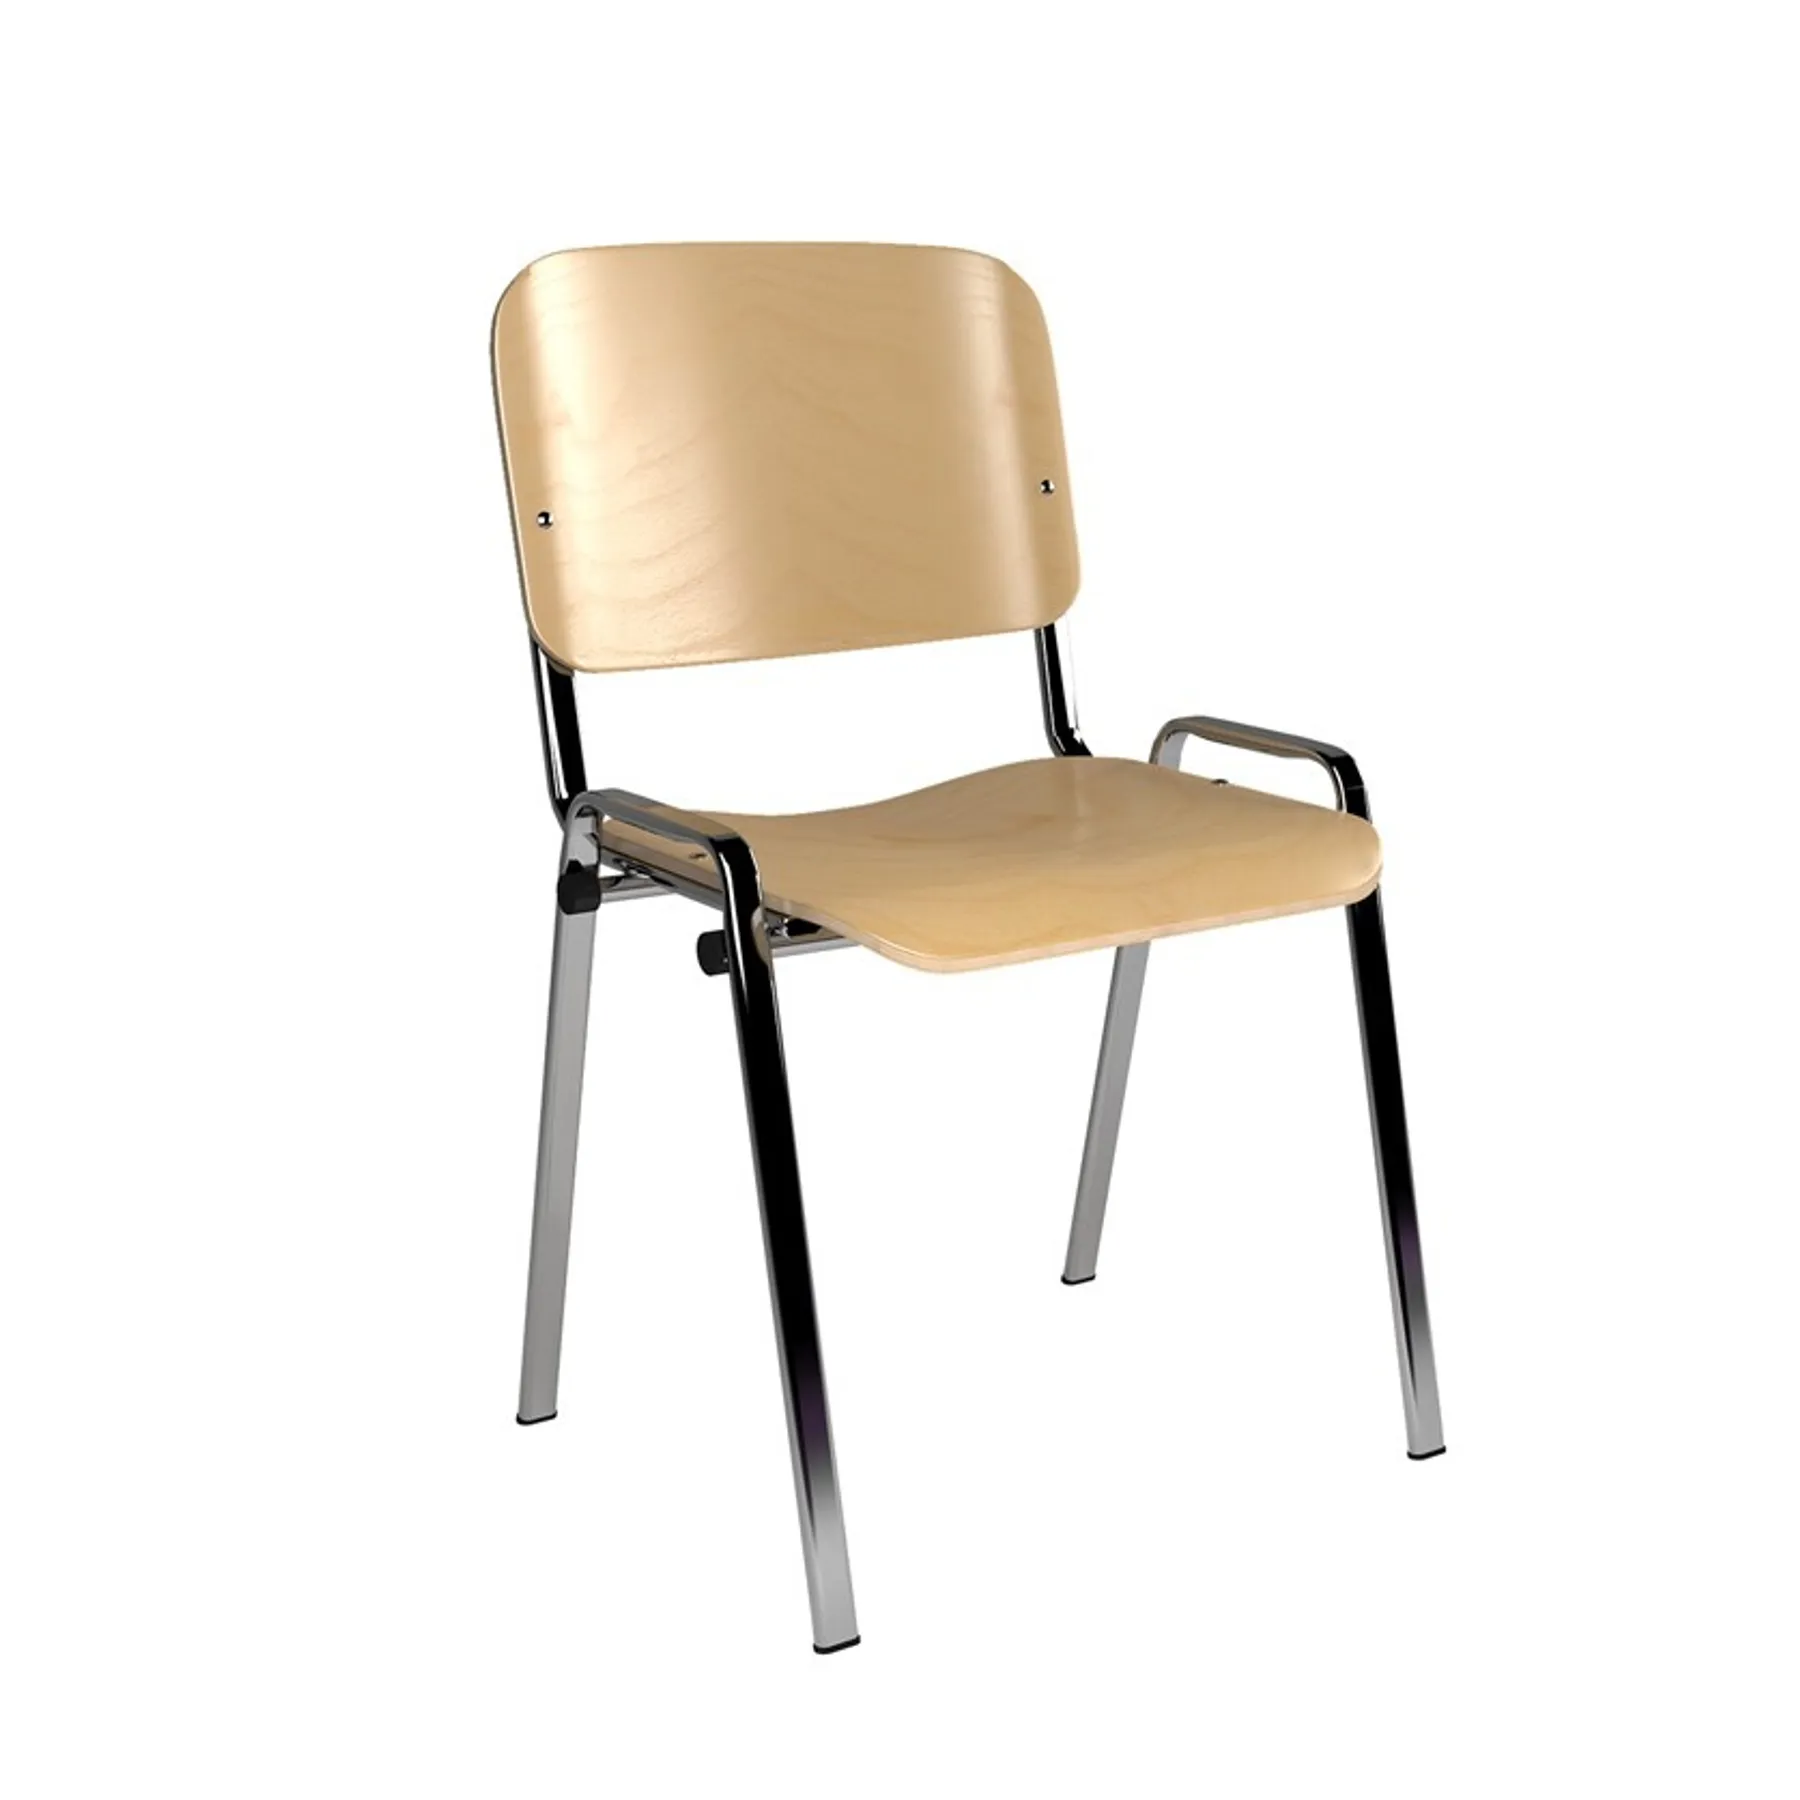 Taurus wood chair